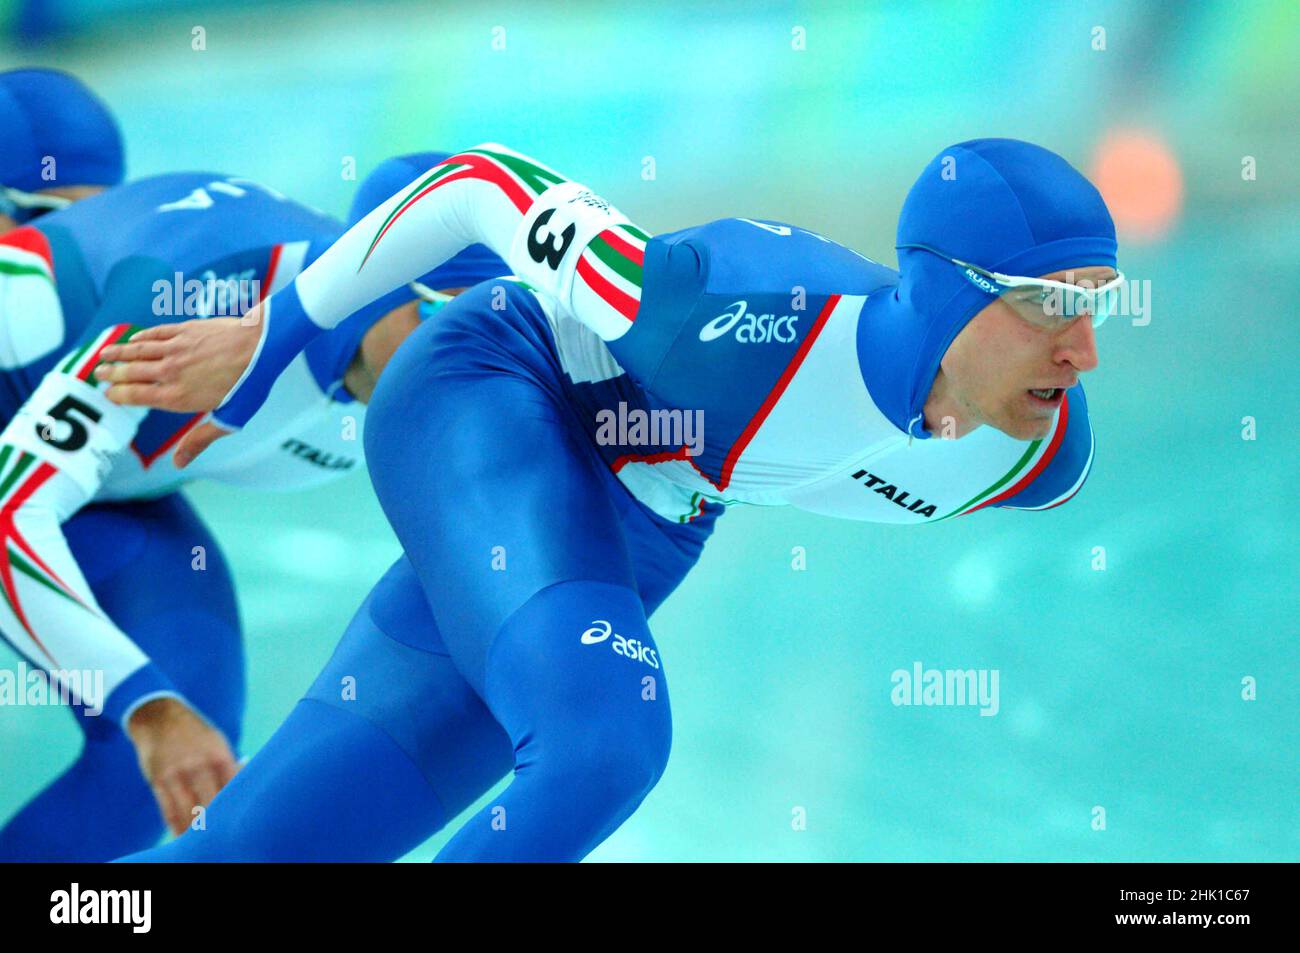 Turin Italien 2006-02-16: Turin 2006 Olympische Winterspiele, Eisschnelllauf-Wettbewerb, Matteo Anesi, Enrico Fabris und Ippolito Sanfratello, während des Rennens. Goldmedaille in Italien Stockfoto